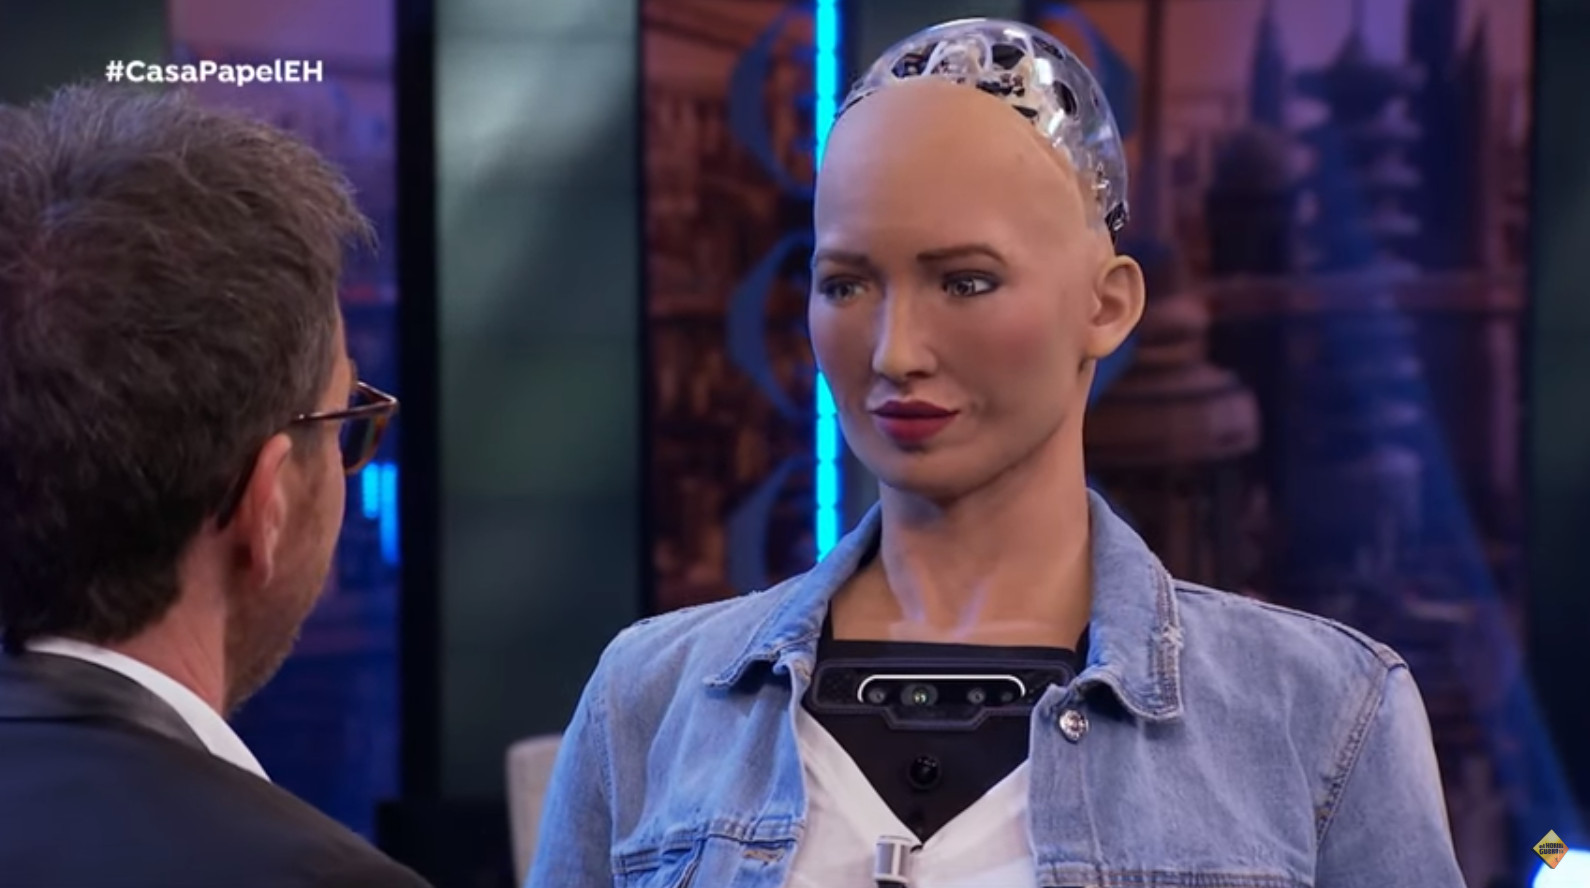 El robot Sophia da una lección a todos los humanos en "El Hormiguero" 2